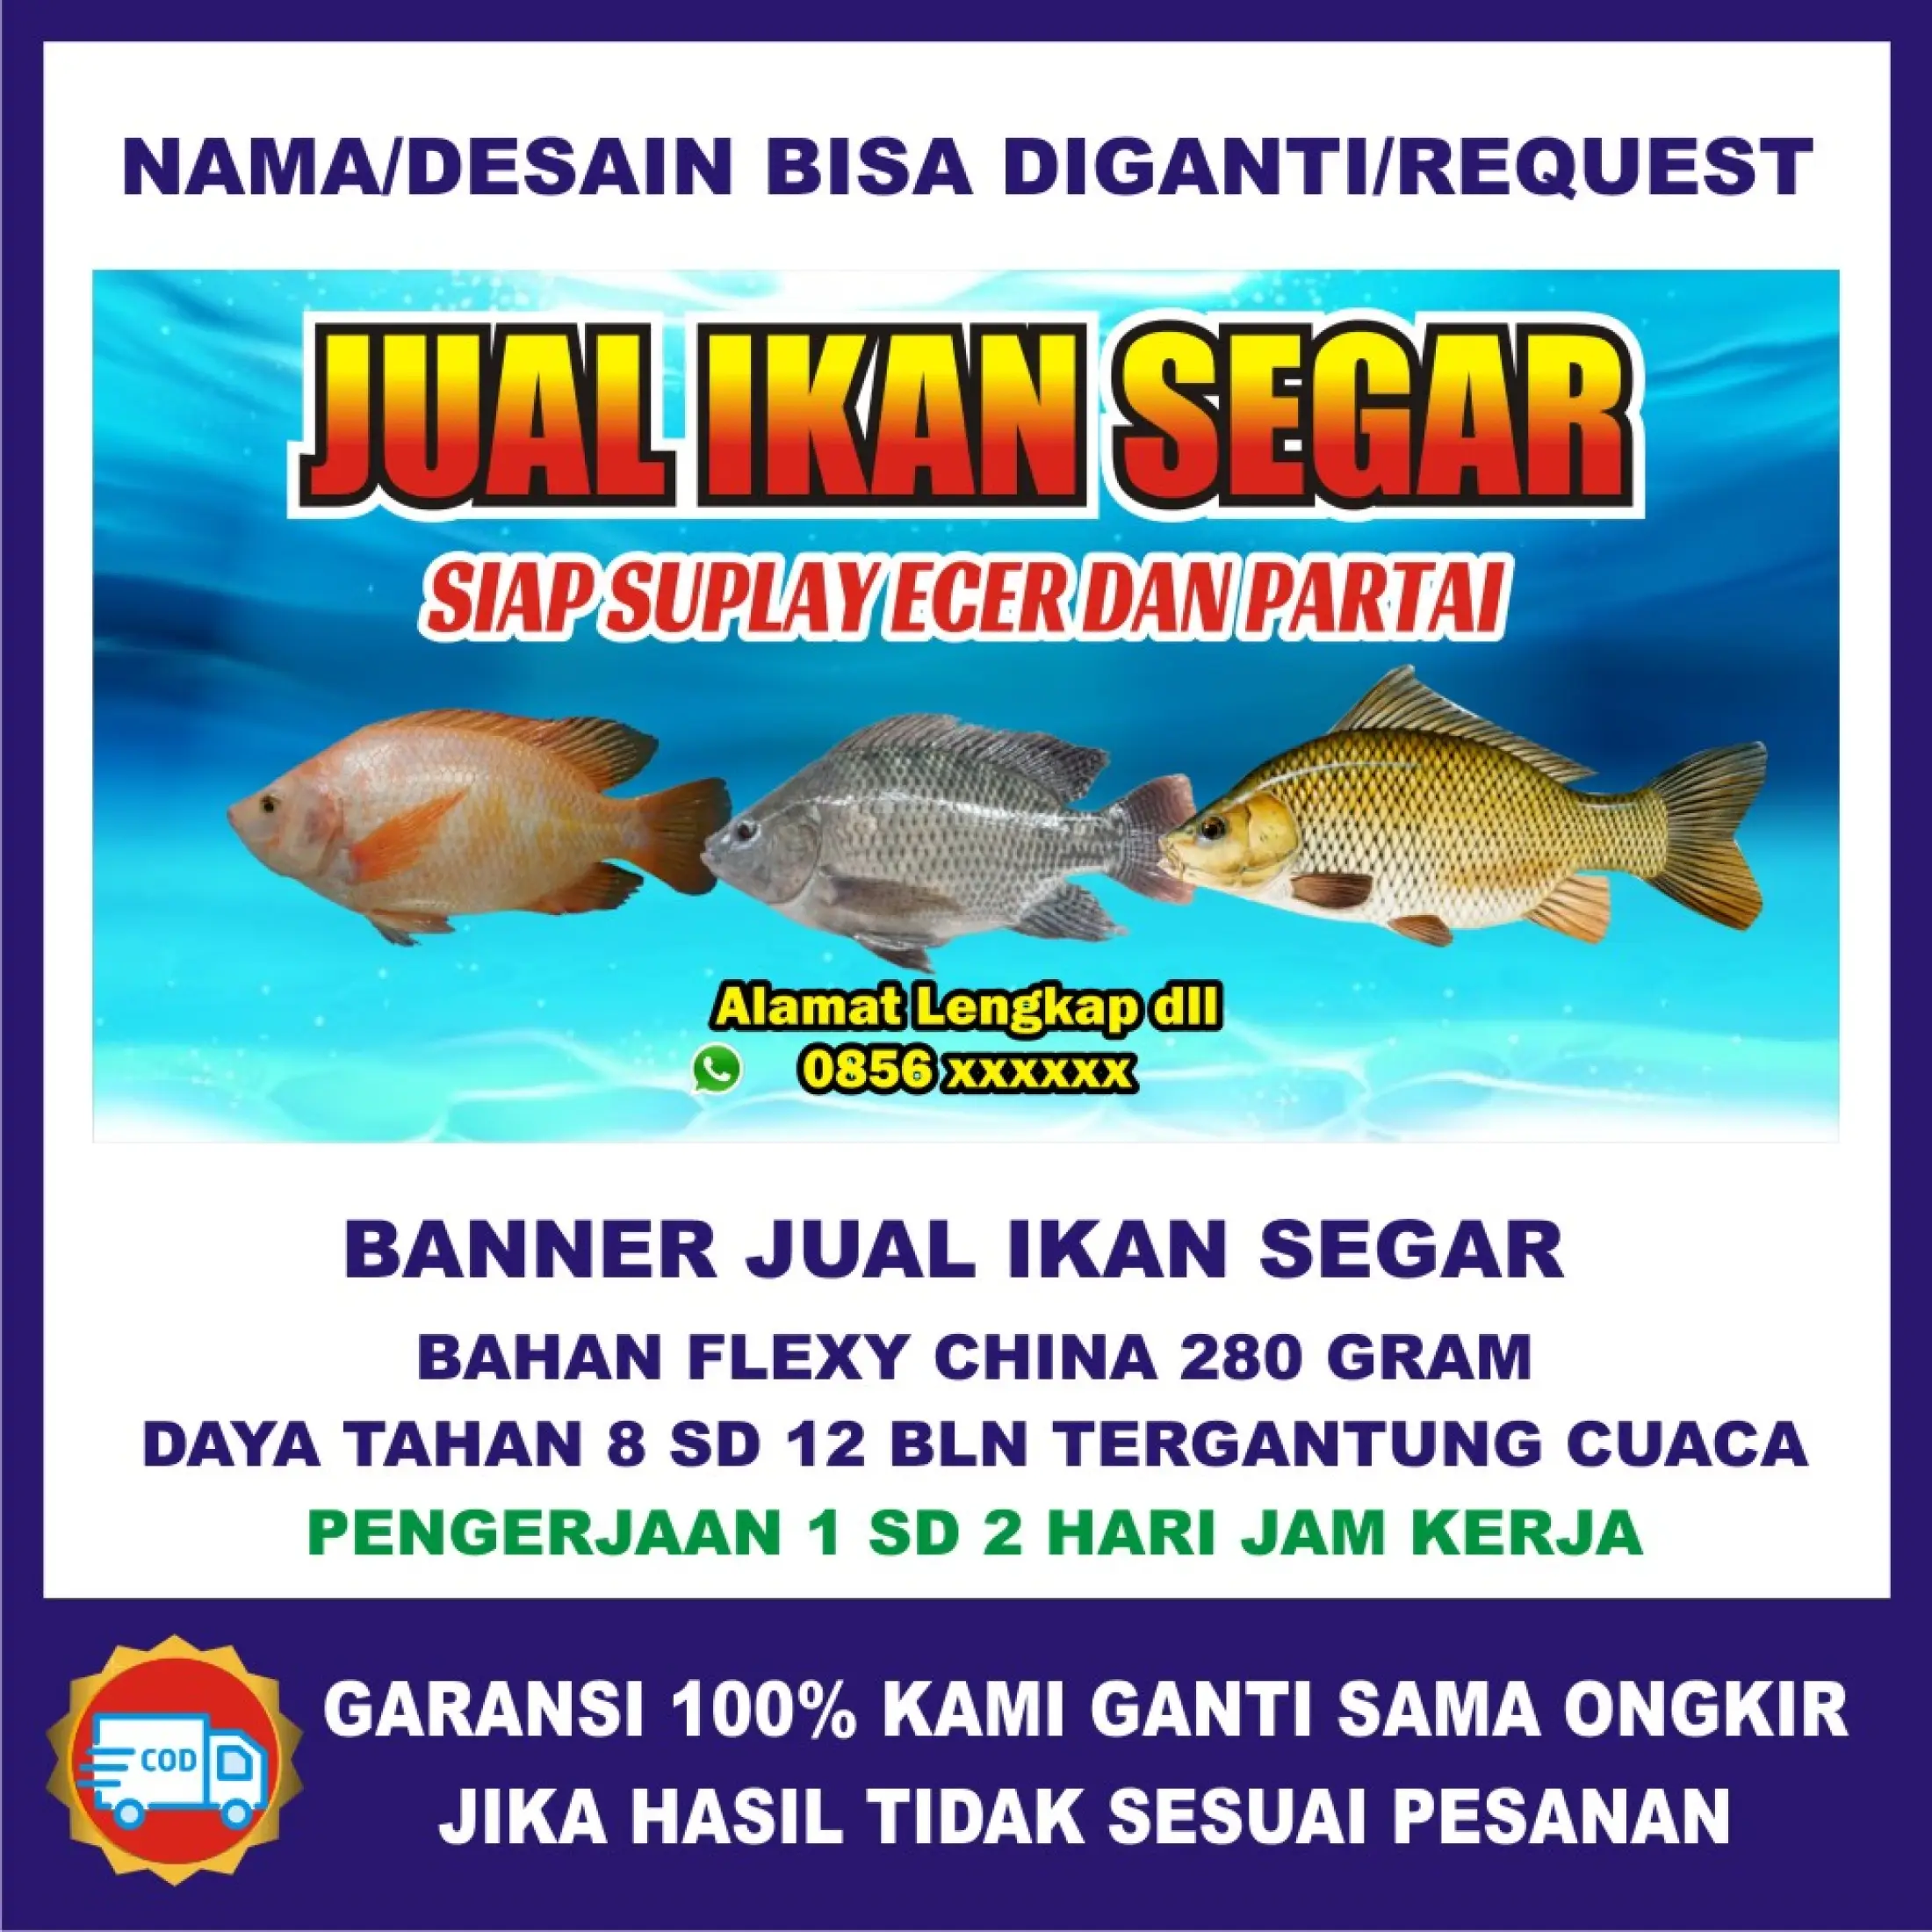 Spanduk Jual Ikan Segar Banner Jual Ikan Segar Mmt Gambar Jual Ikan Segar Banner Jual Ikan Lazada Indonesia